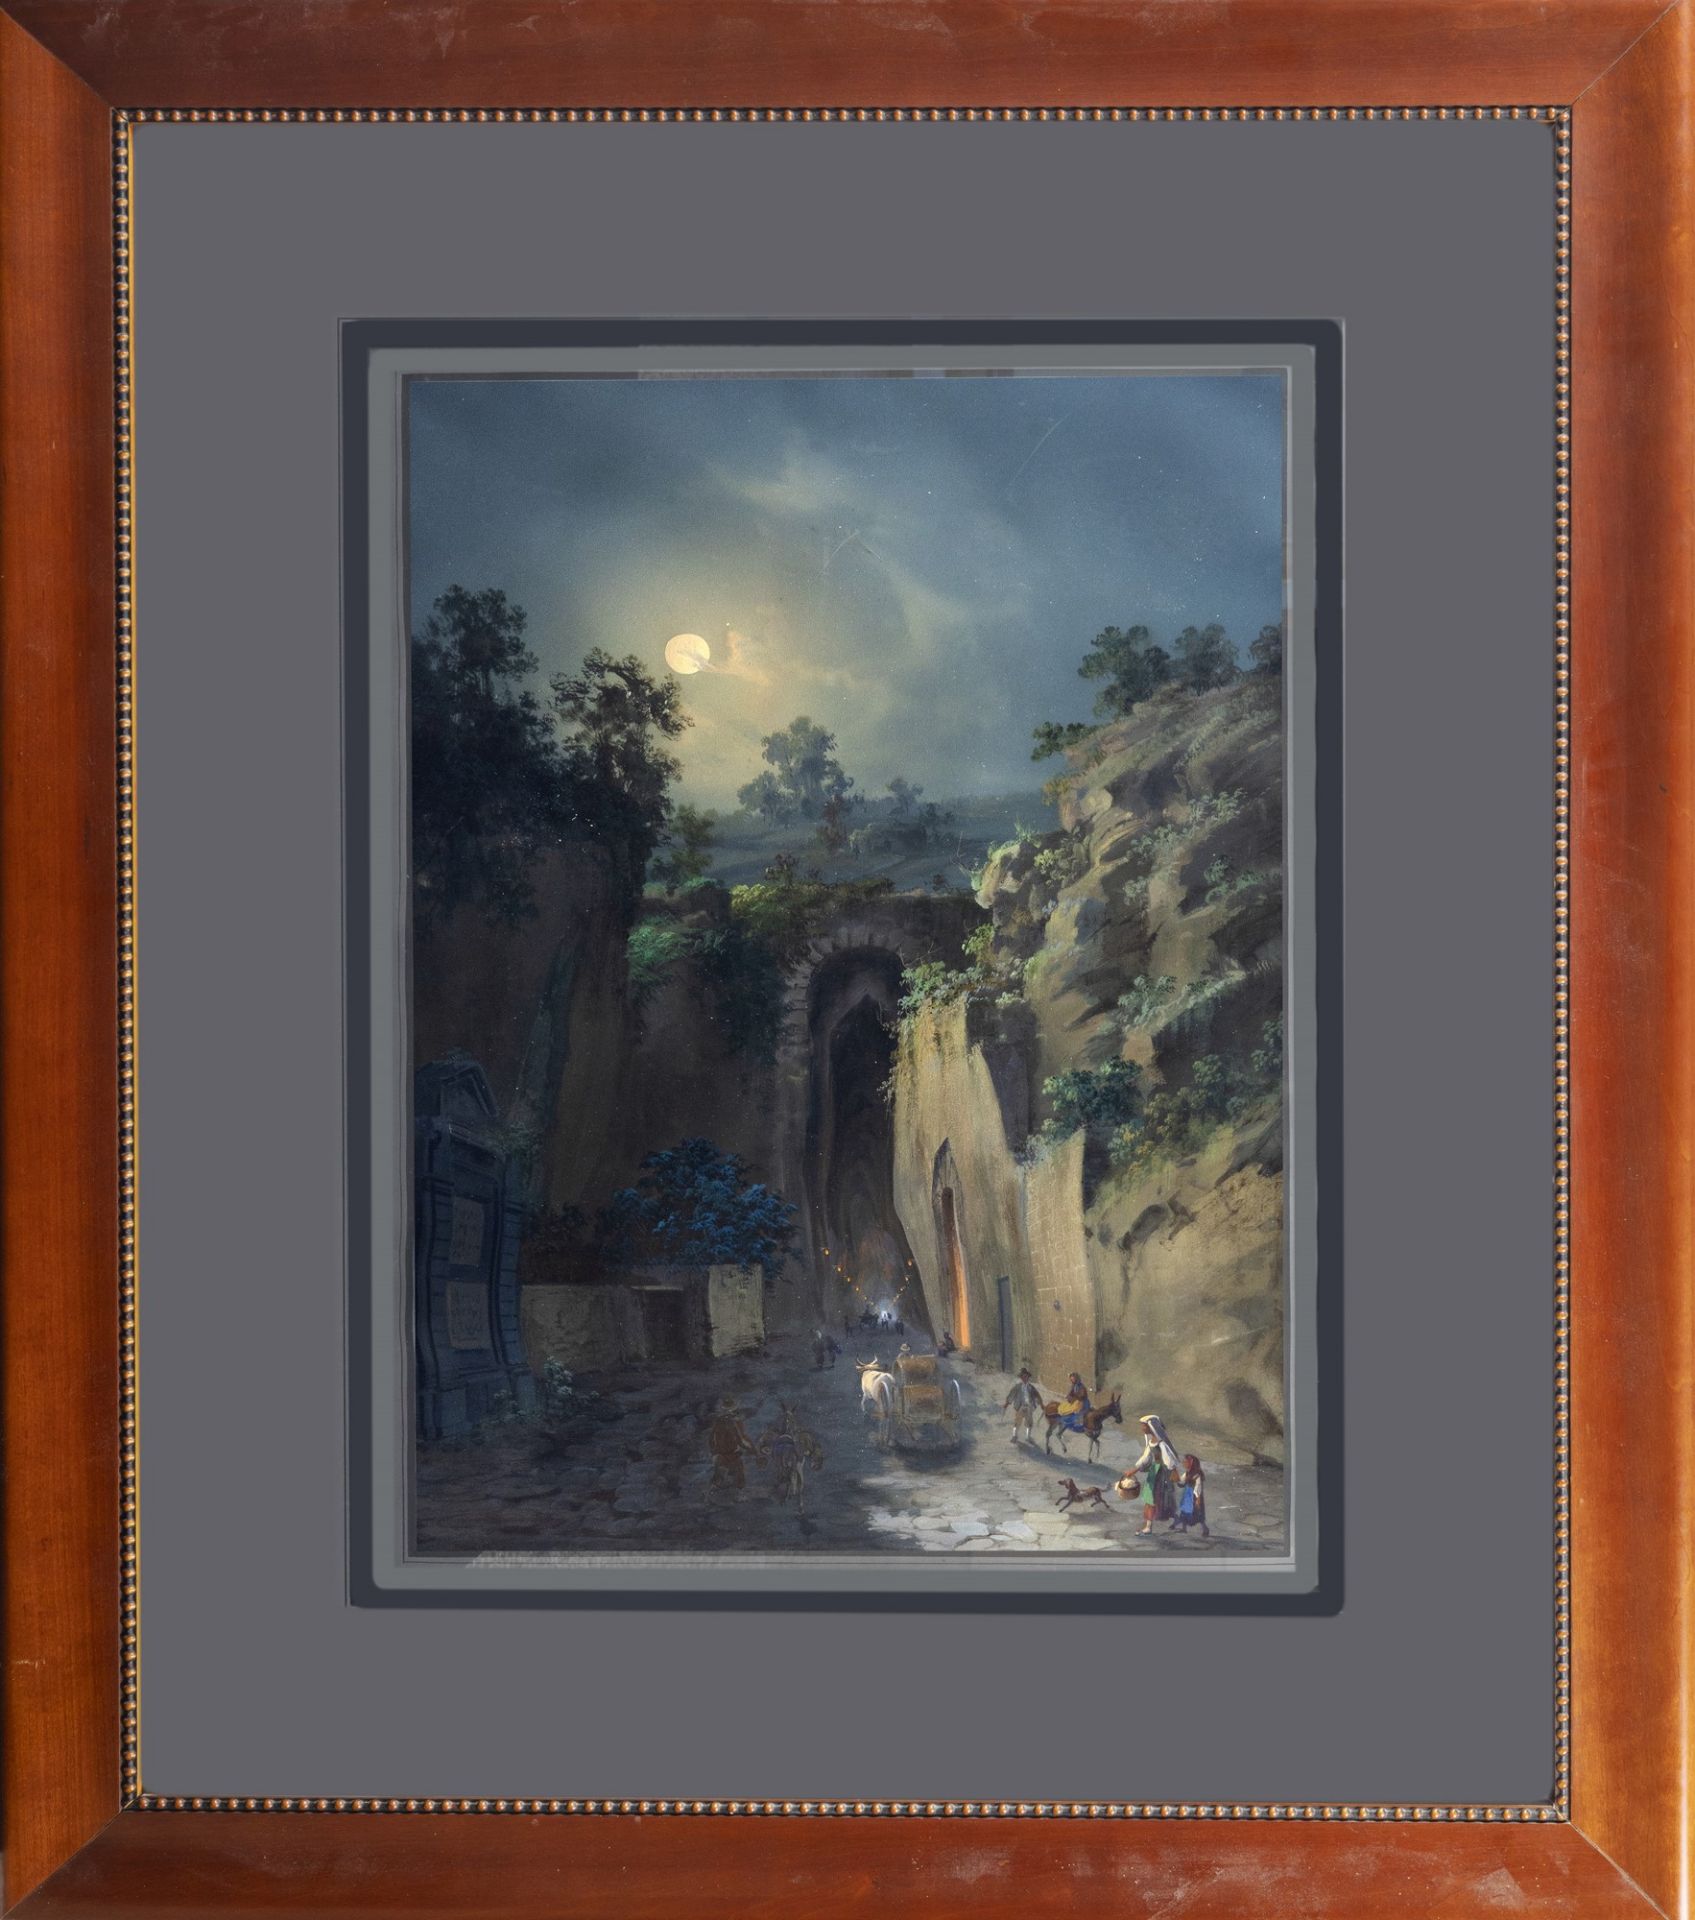 Gioacchino La Pira (active between 1839 and 1875) - Posillipo cave, circa 1868 - Image 2 of 2